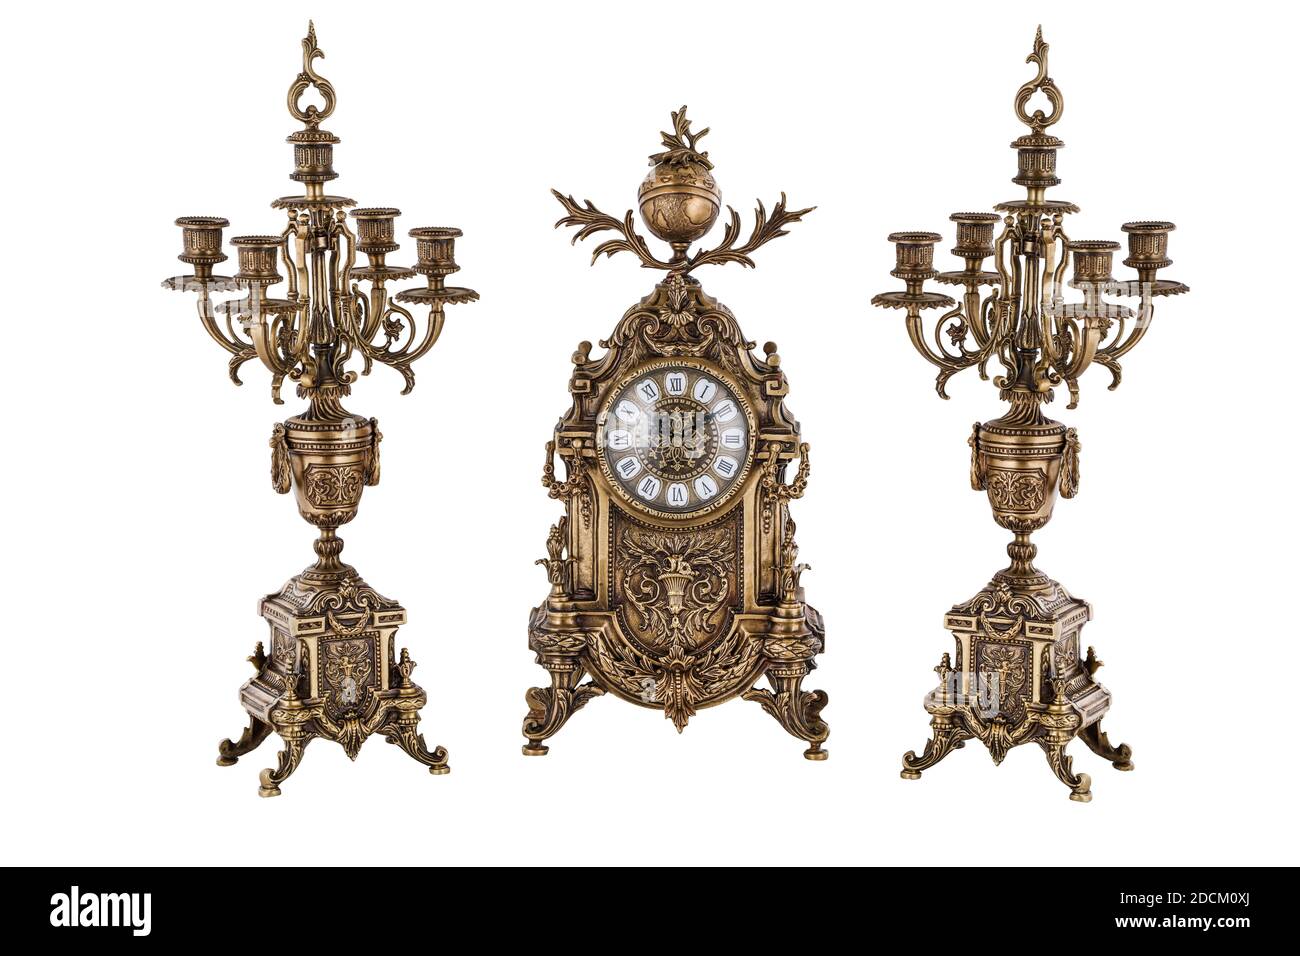 Montre or vintage avec candélabre sur fond blanc, horloge et candélabre en  bronze, chandeliers et horloge en or, horloge et chandeliers anciens, vint  Photo Stock - Alamy